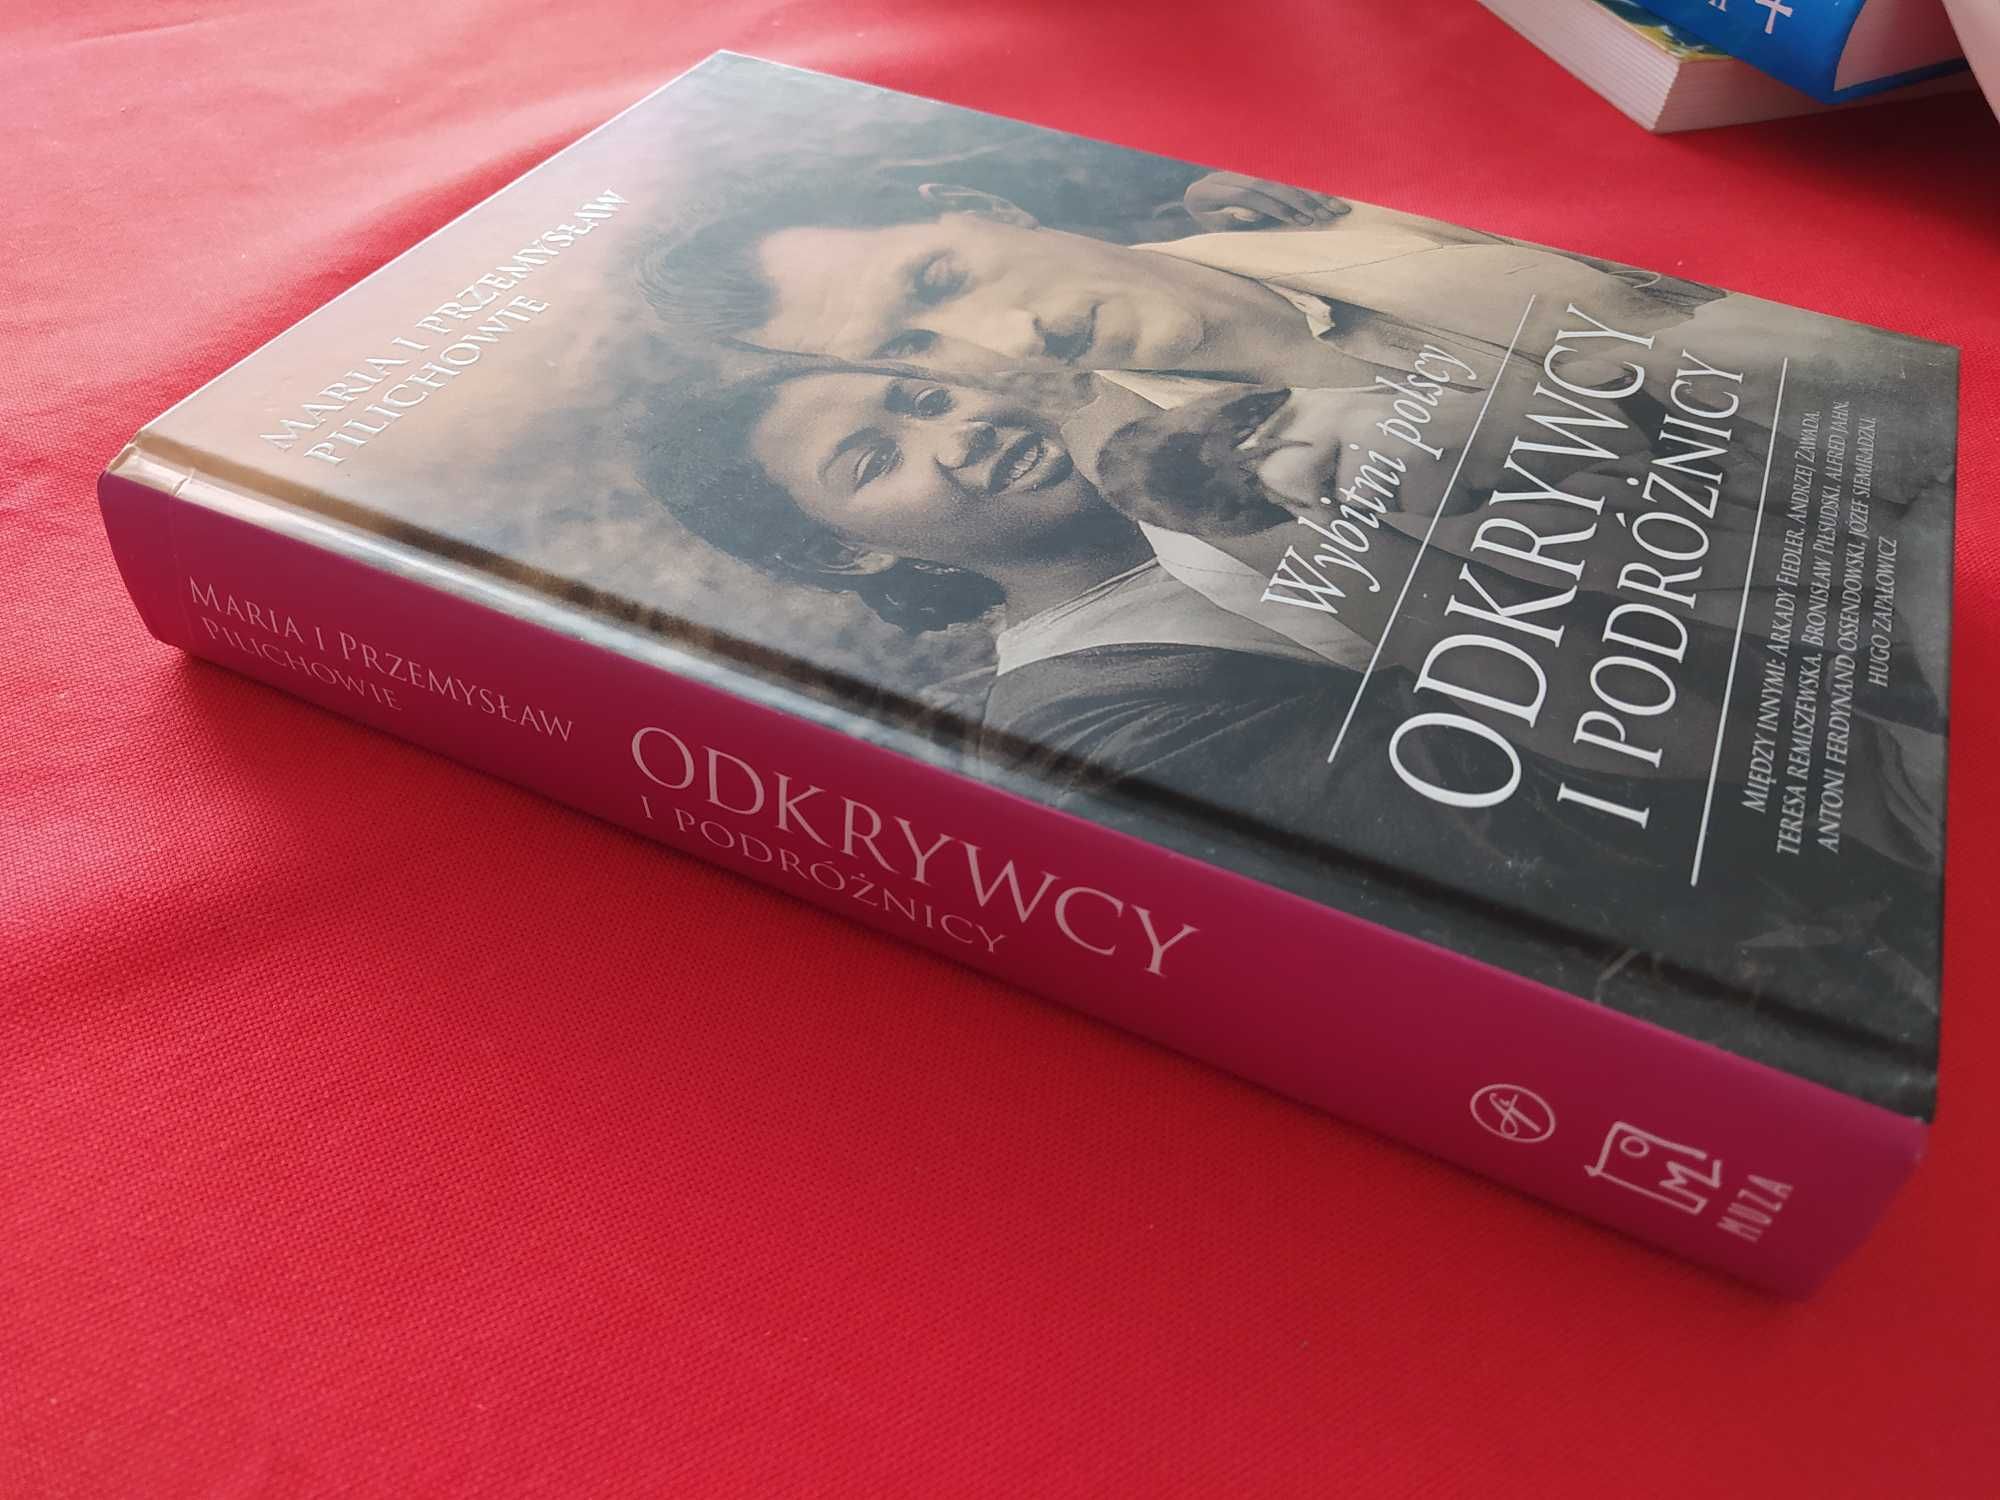 Książka, Wybitni polscy odkrywcy i podróżnicy, biografie